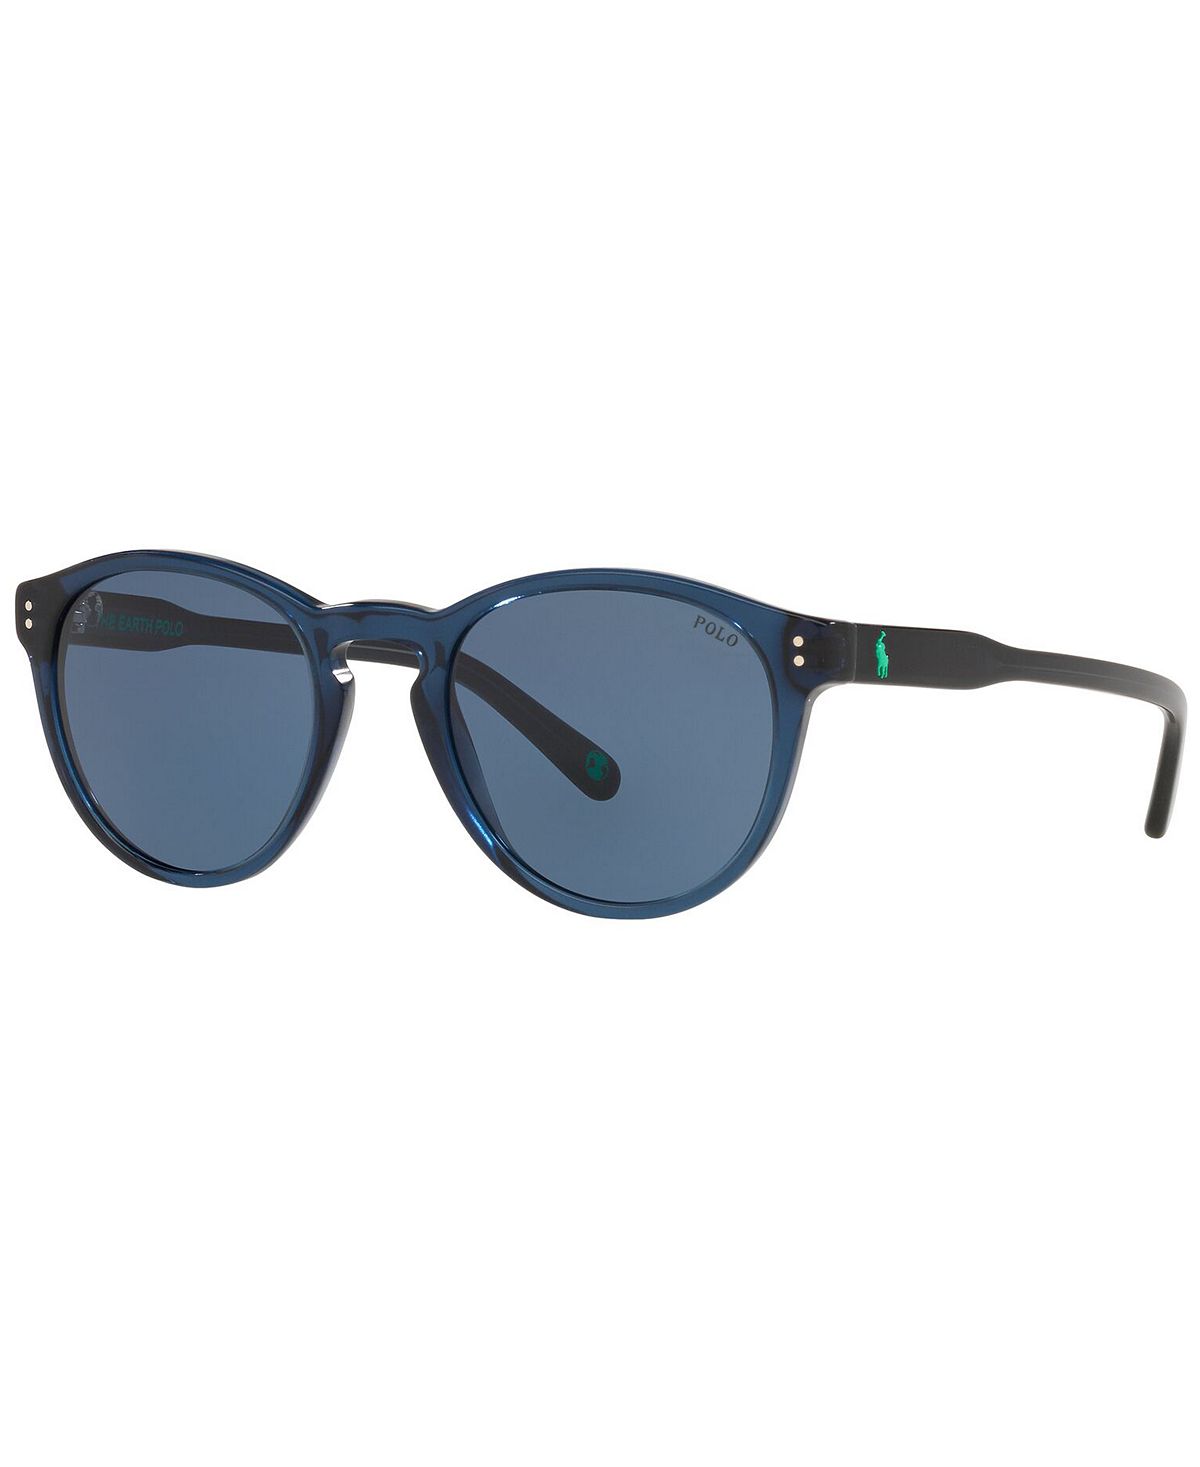 Мужские солнцезащитные очки, ph4172 50 Polo Ralph Lauren, мульти